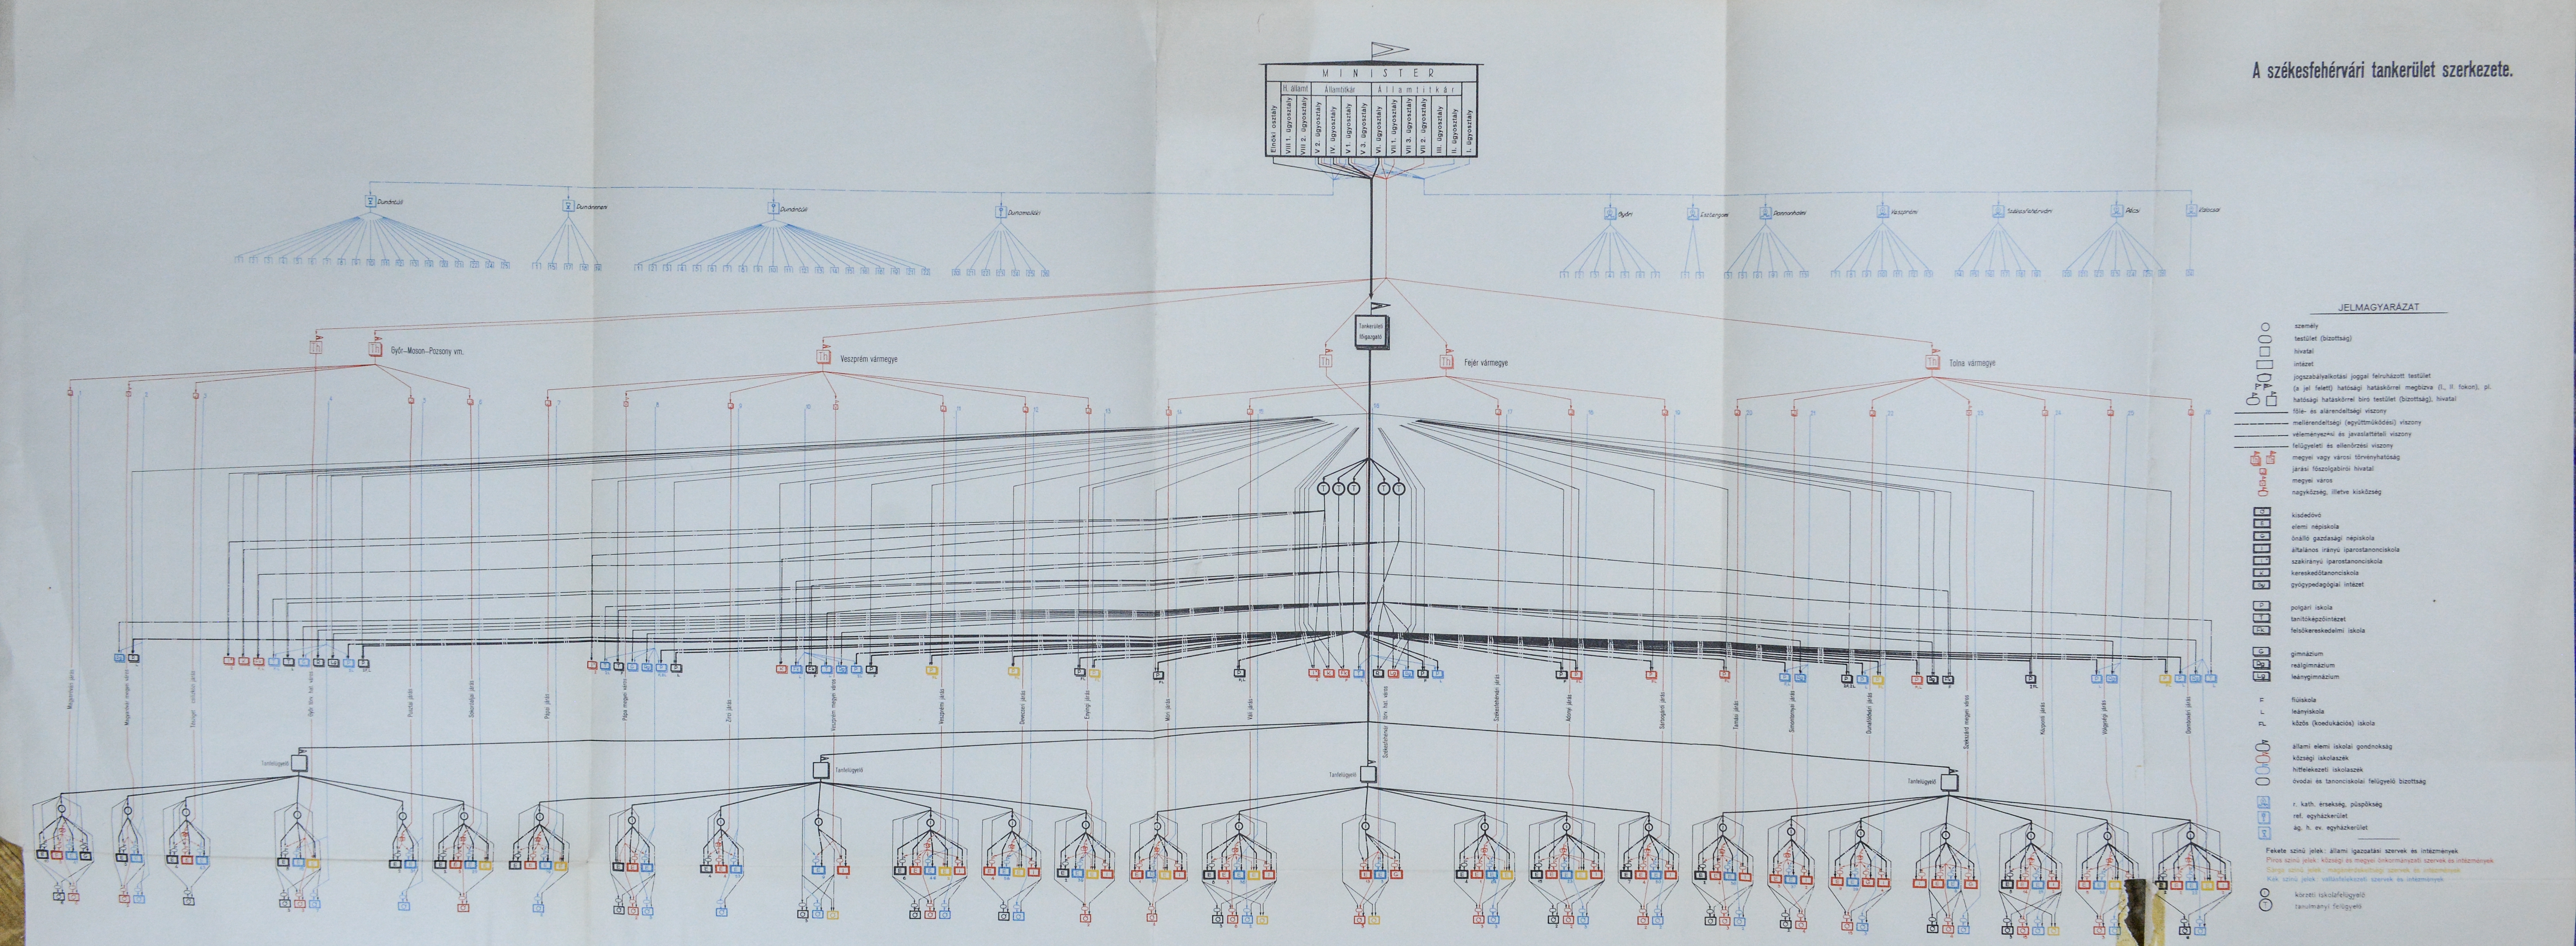 A székesfehérvári tankerület szerkezete (szervezeti ábra)